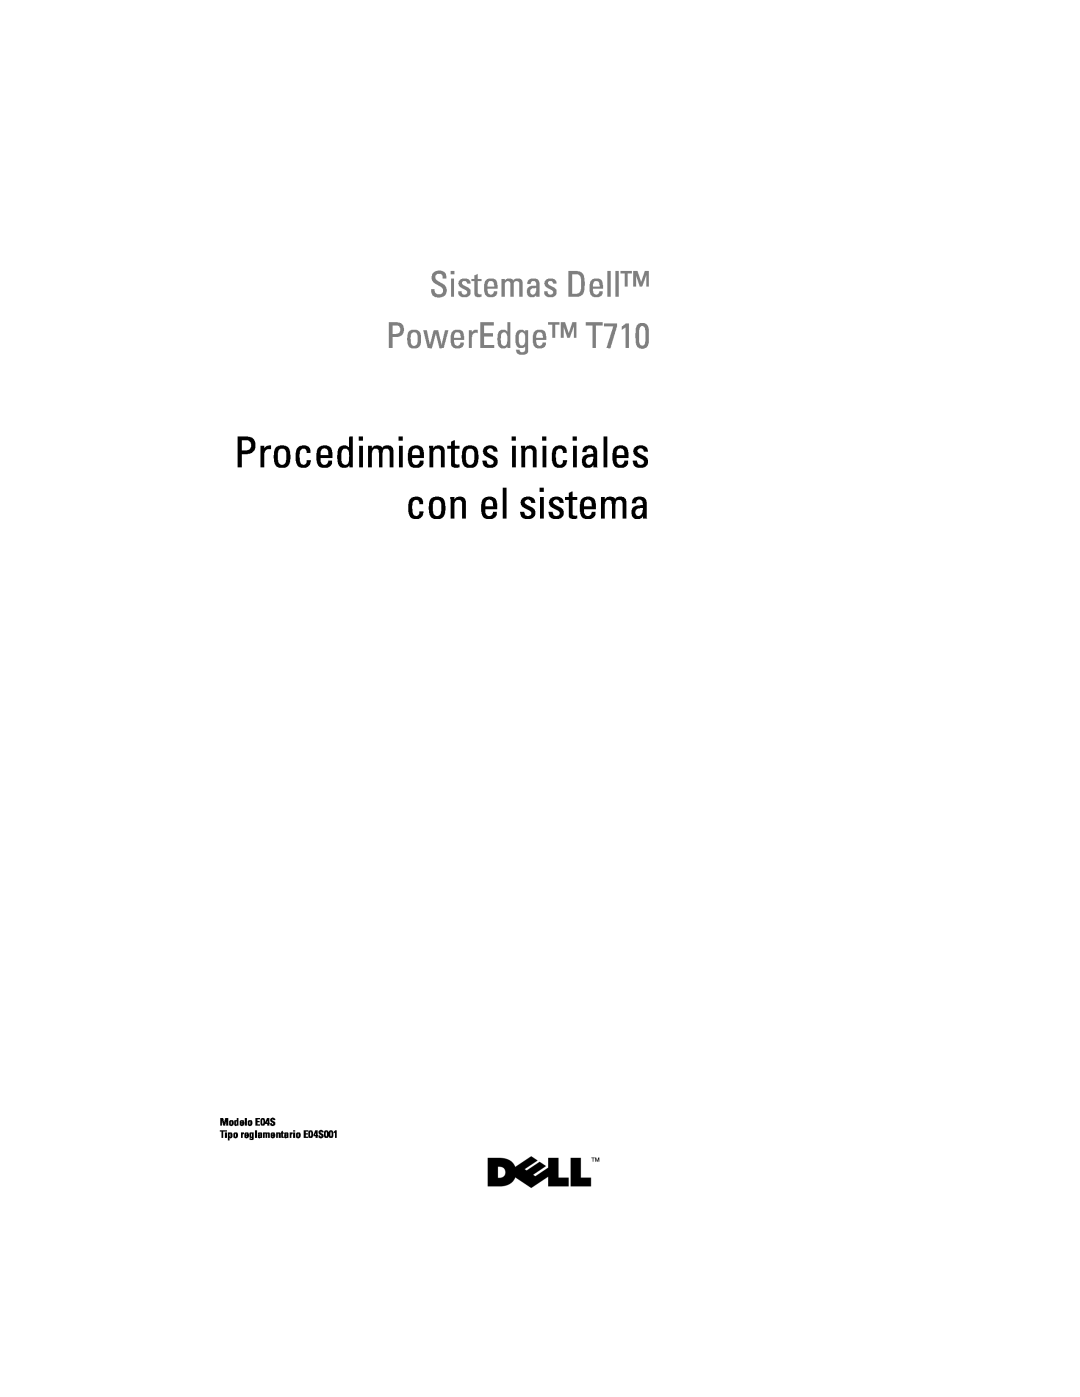 Dell N732H Procedimientos iniciales con el sistema, Sistemas Dell PowerEdge T710, Modelo E04S Tipo reglamentario E04S001 